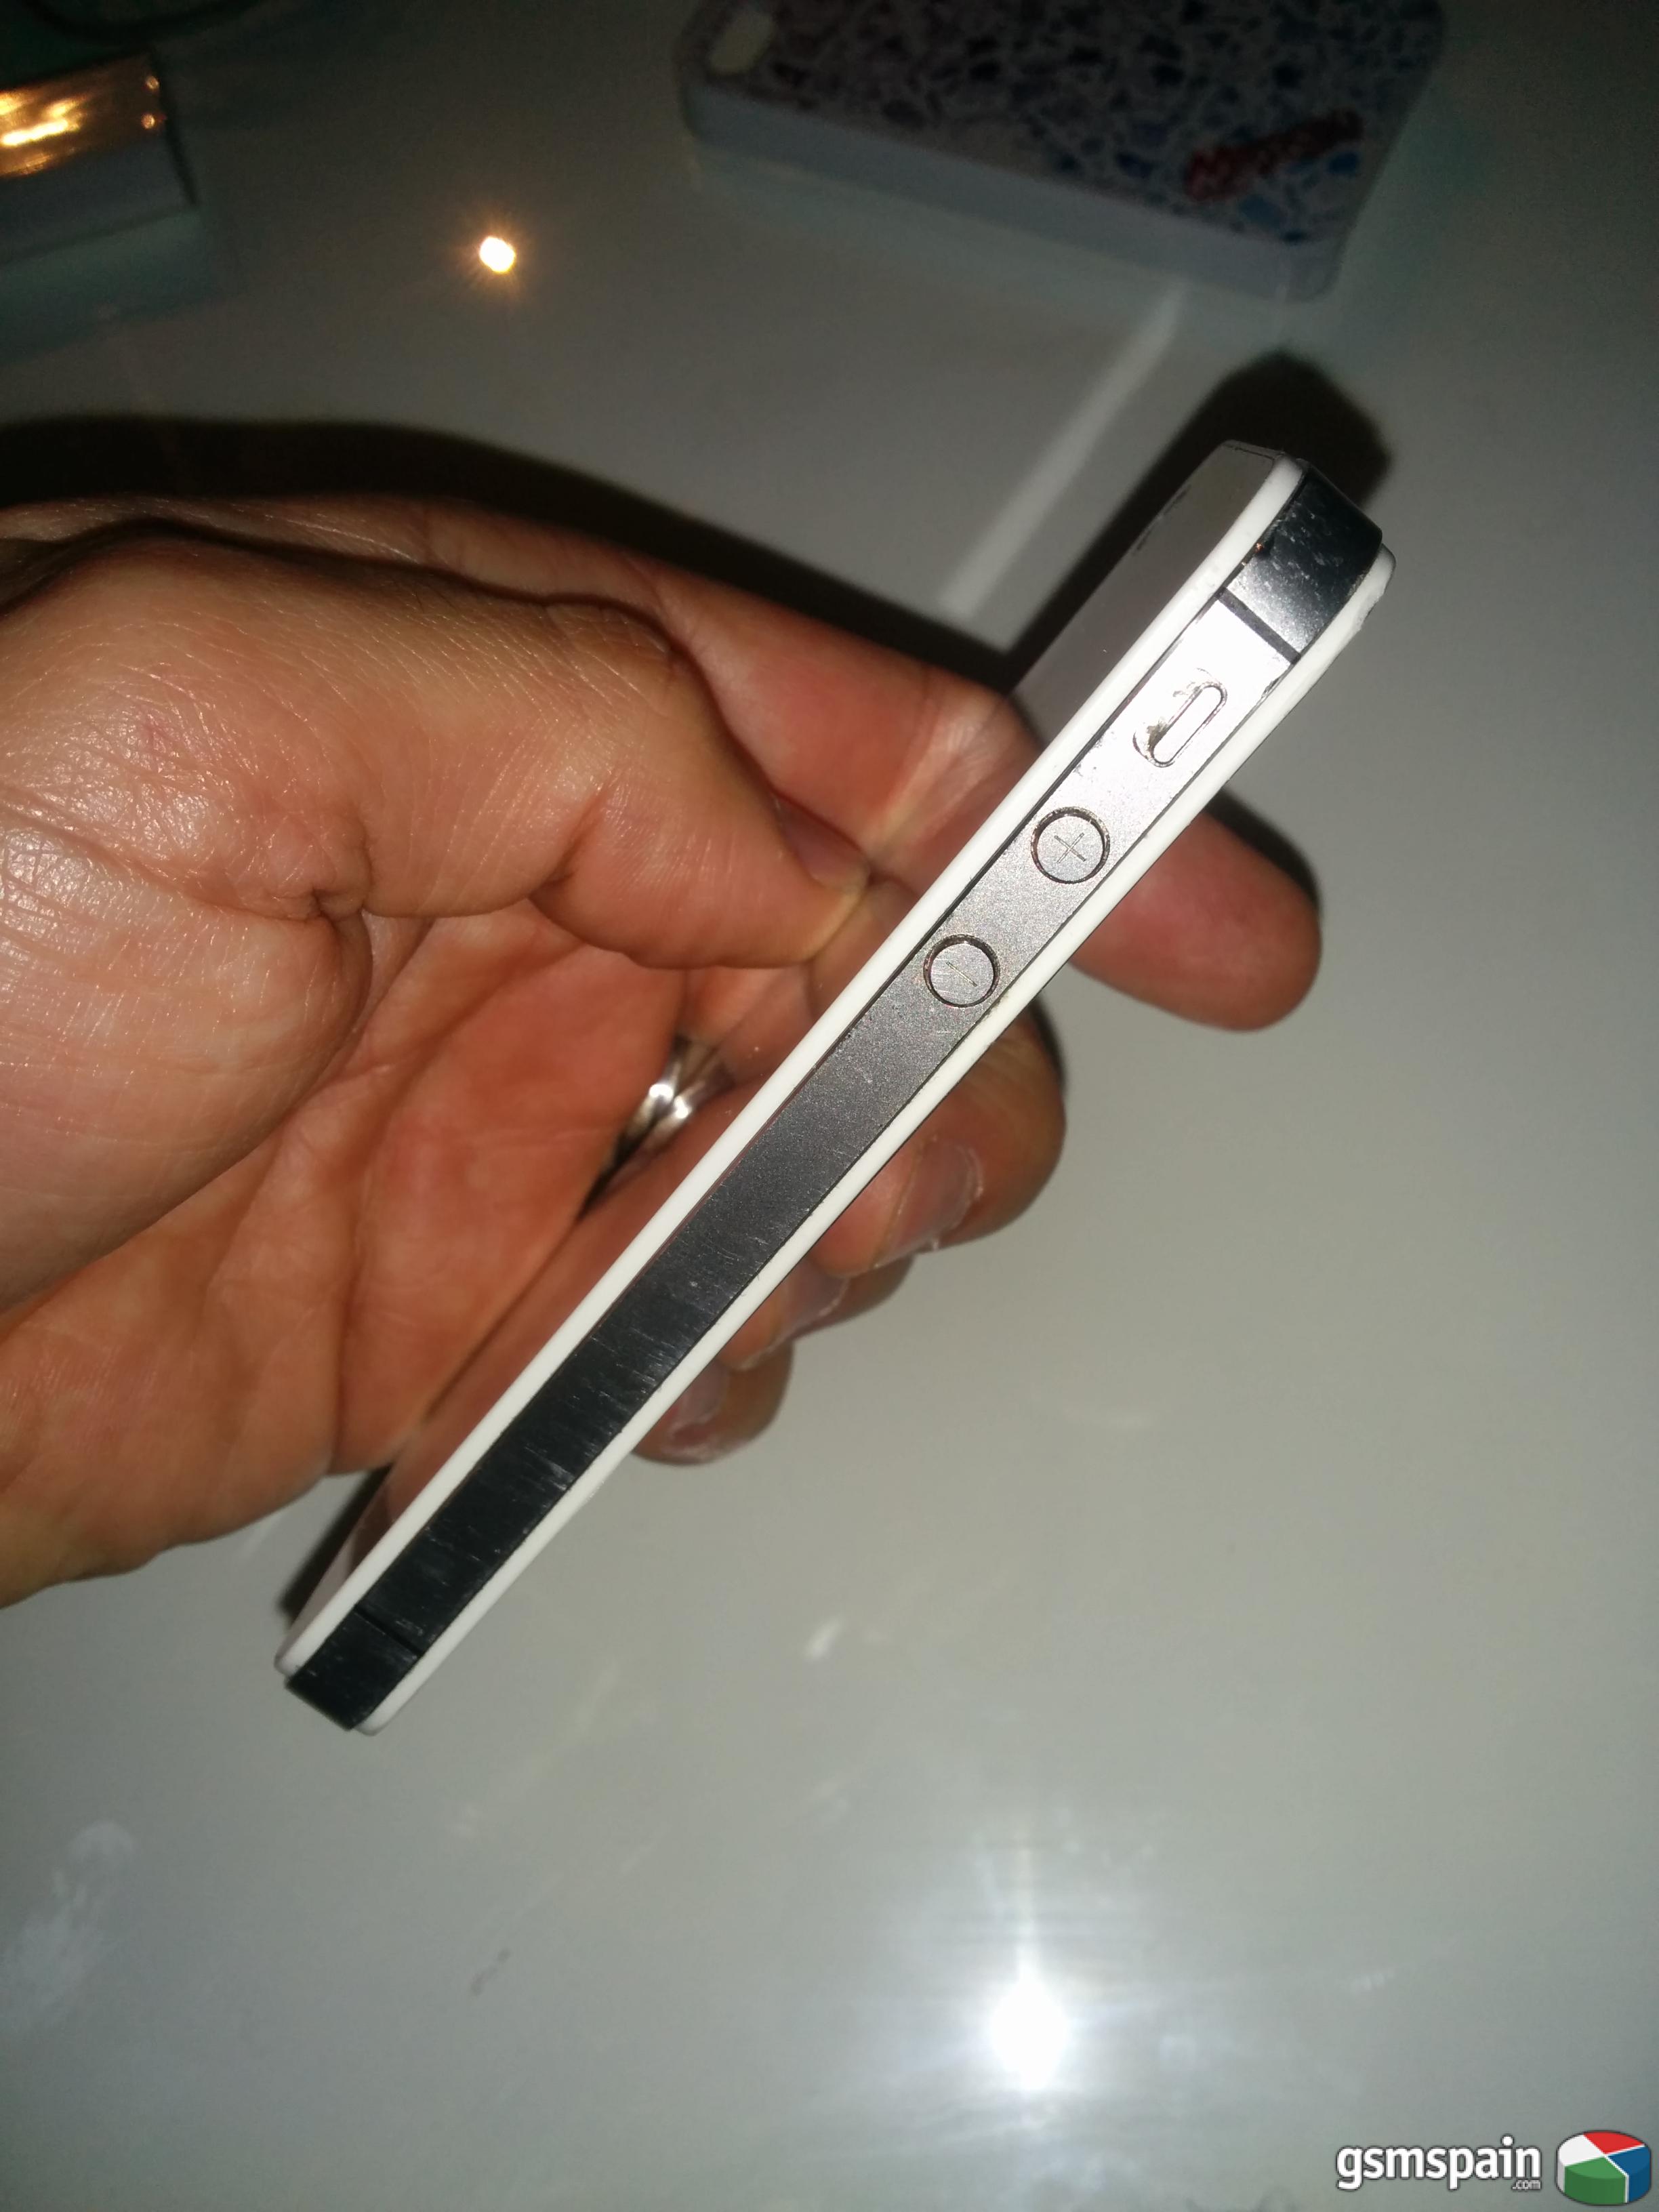 [VENDO] Iphone 4S 16gb blanco libre con caja original y accesorios Barcelona provincia